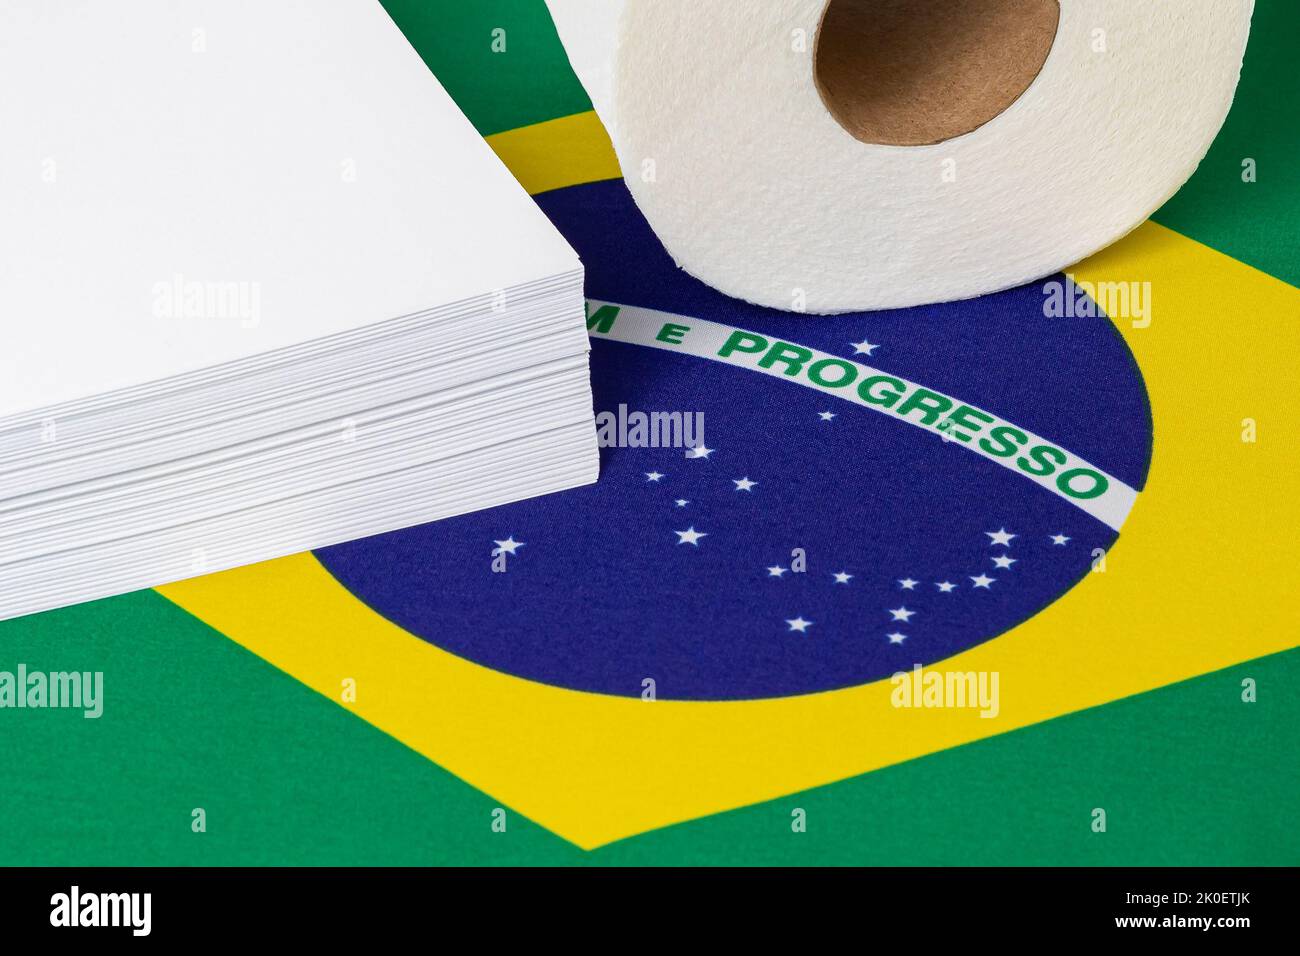 Rame de papier d'imprimante, papier toilette et drapeau brésilien. Industrie des produits du papier, concept de commerce et de fabrication Banque D'Images